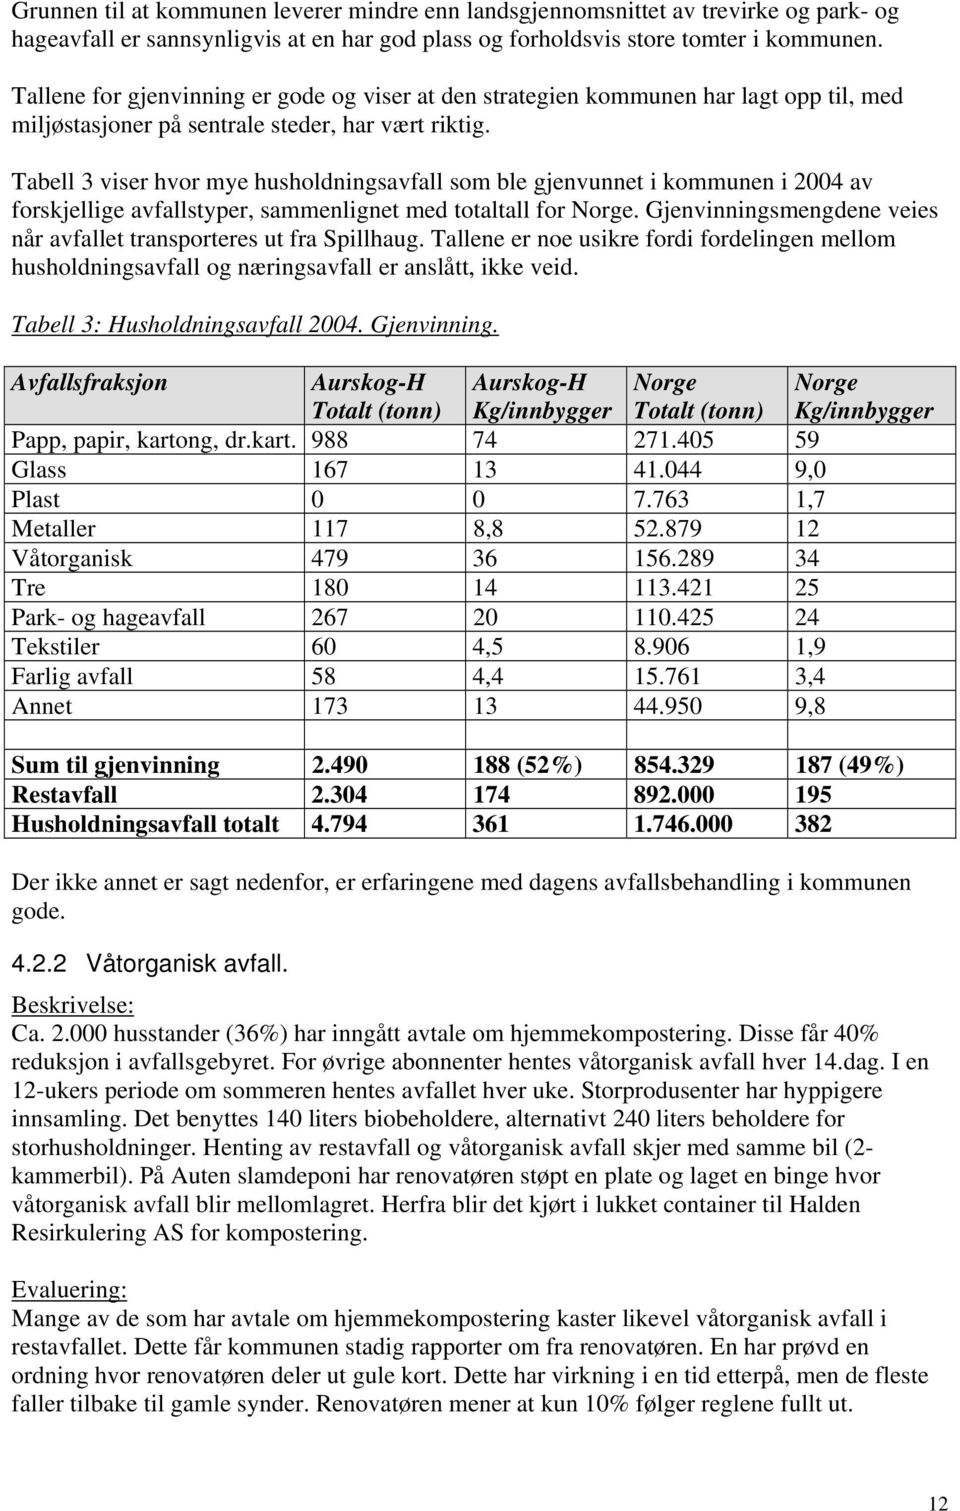 Tabell 3 viser hvor mye husholdningsavfall som ble gjenvunnet i kommunen i 2004 av forskjellige avfallstyper, sammenlignet med totaltall for Norge.